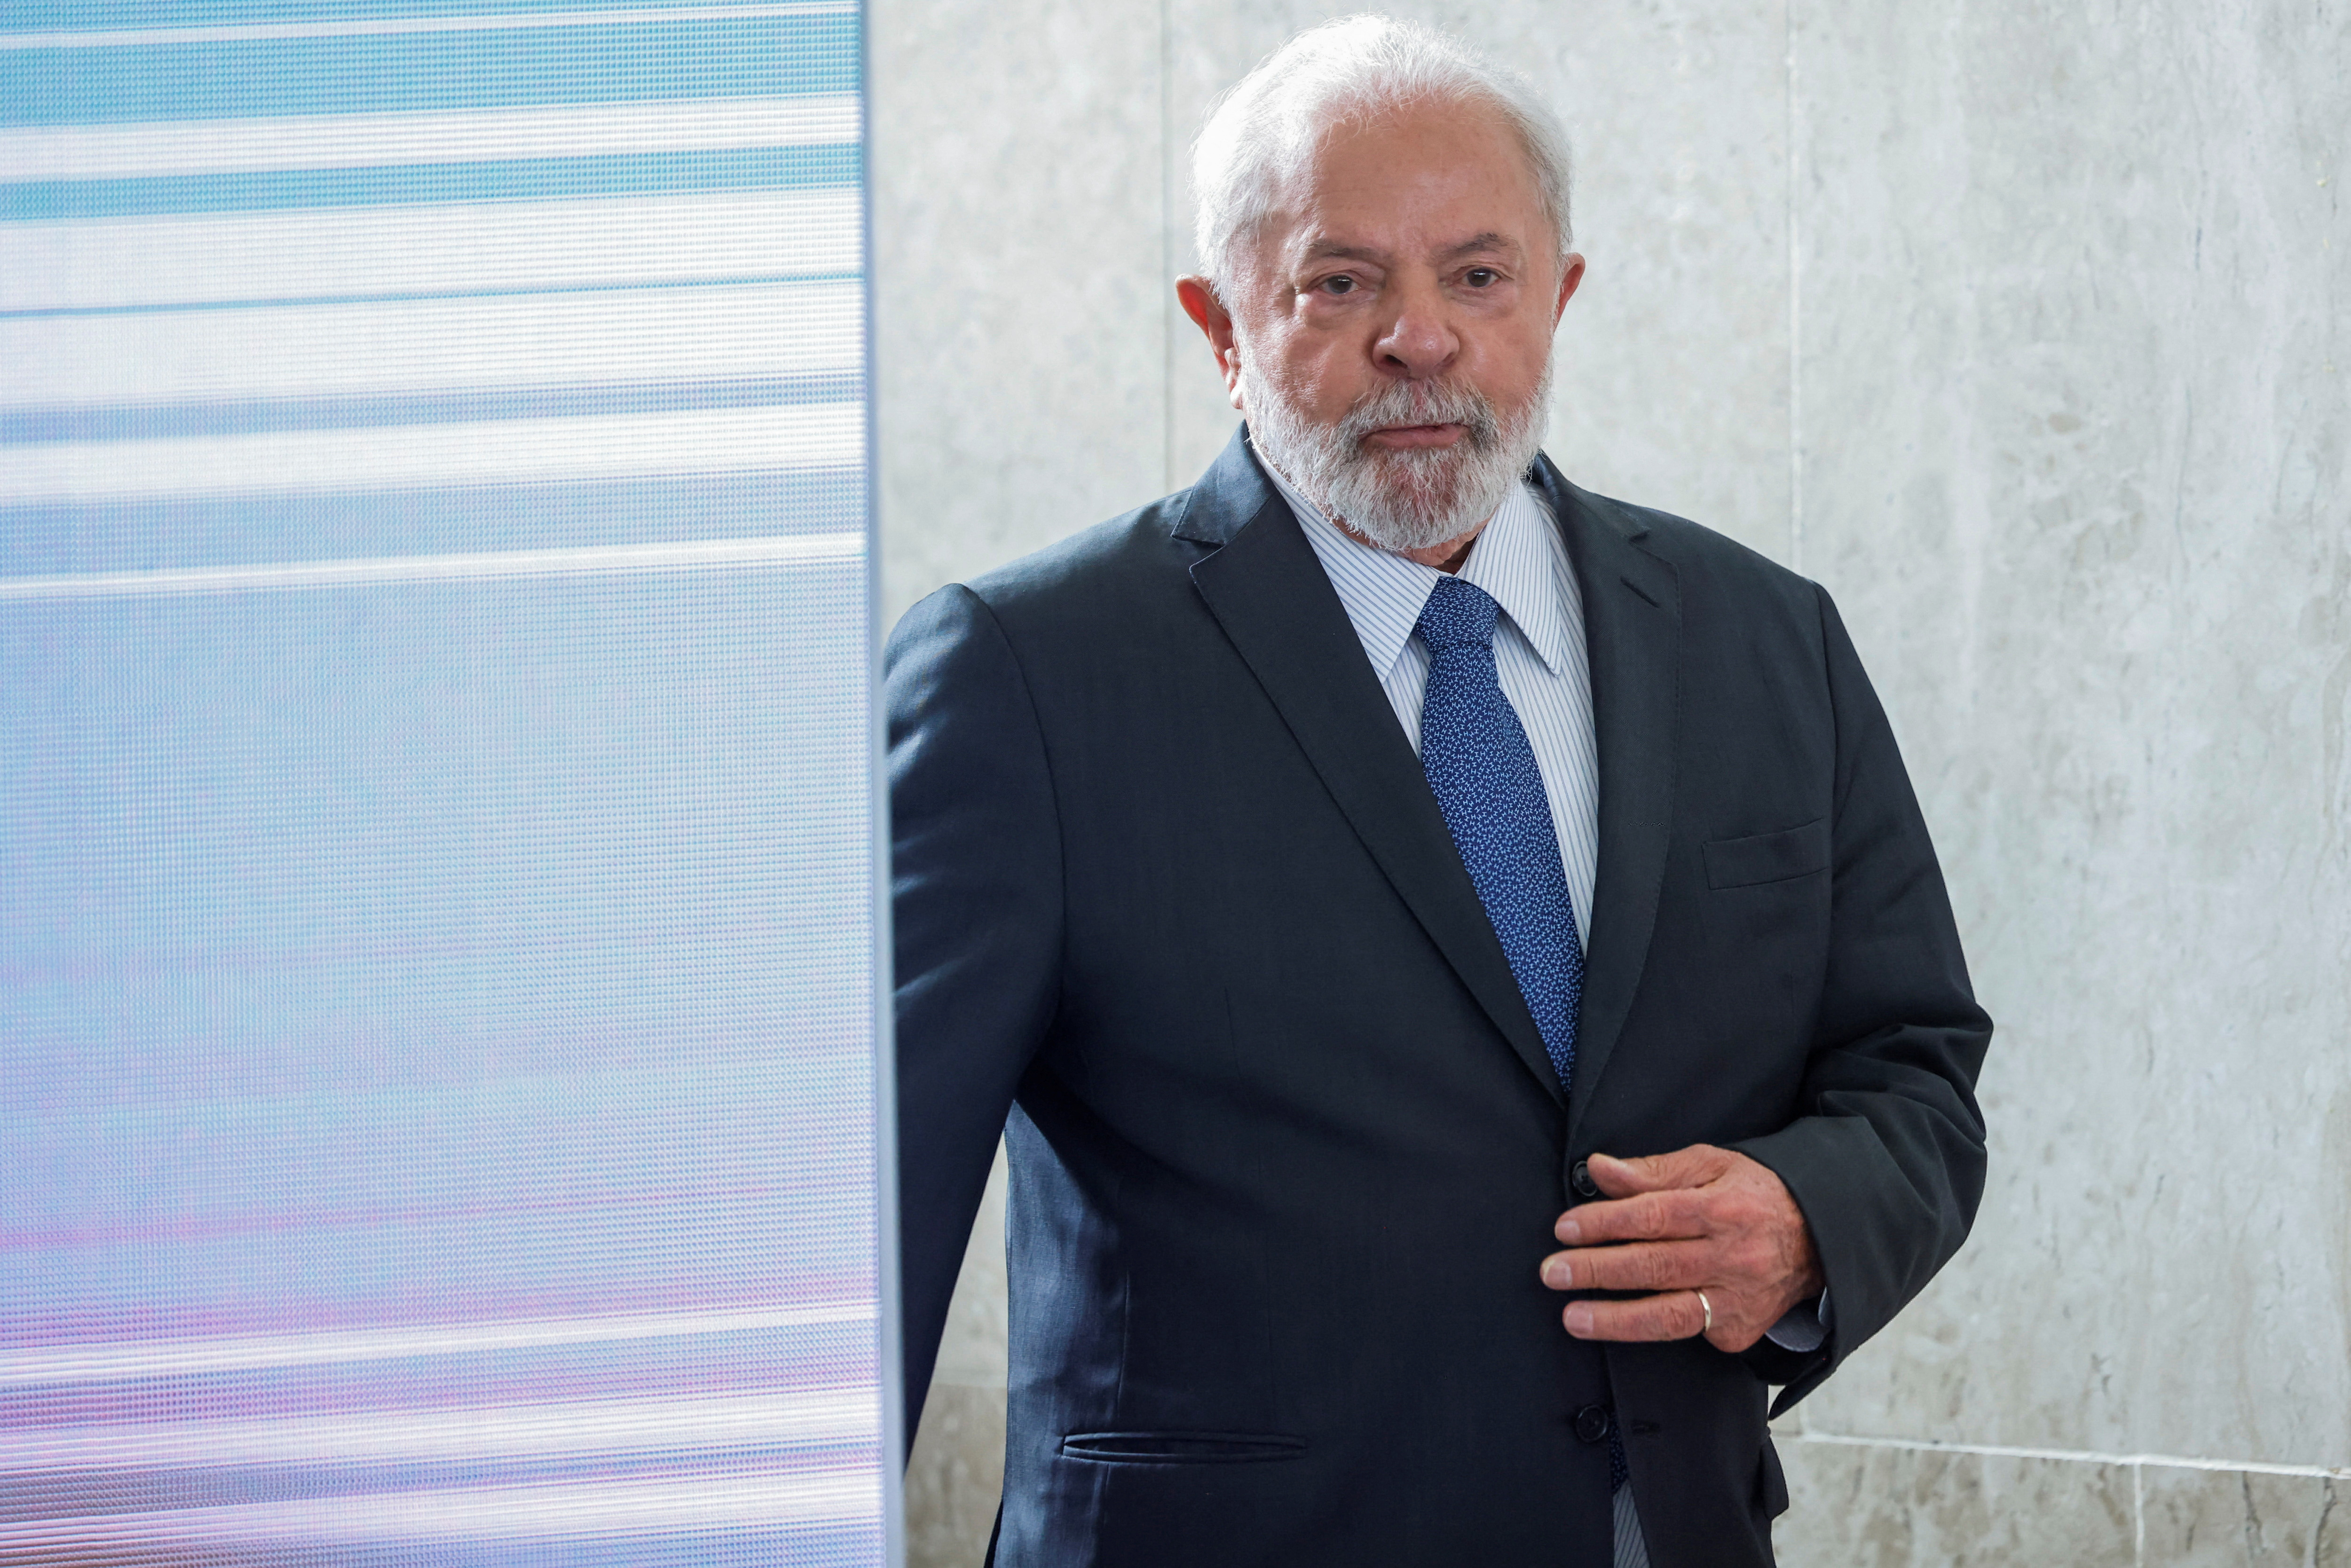 O presidente brasileiro, Luiz Inácio Lula da Silva, participa de cerimônia realizada no Palácio do Planalto, em Brasília